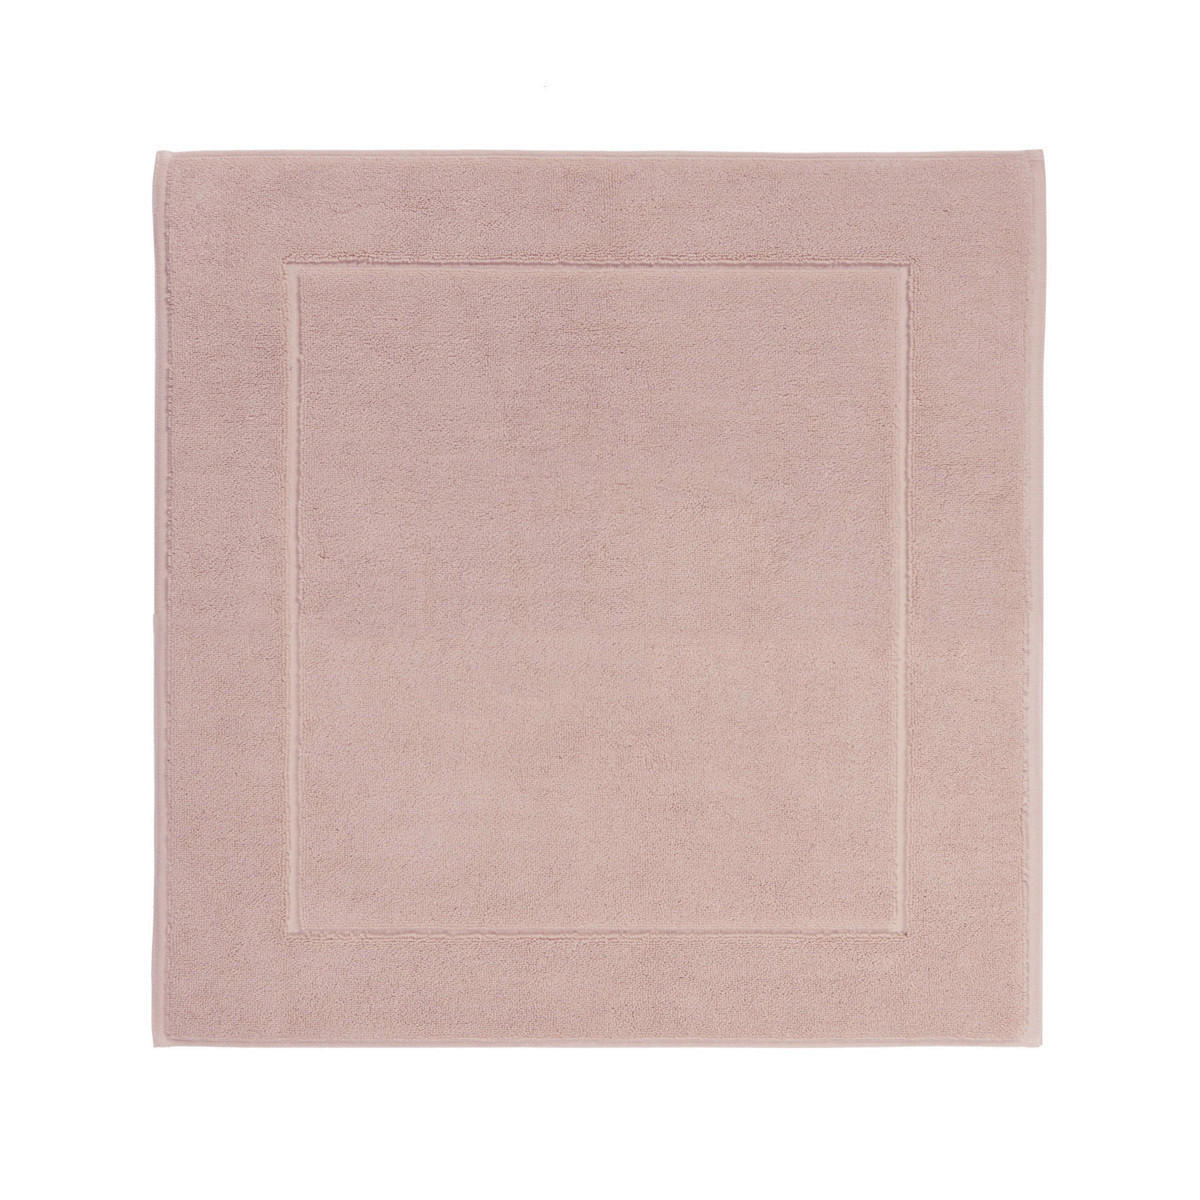 KUPAONSKI TEPIH pink  - pink, Konvencionalno, tekstil (60/60cm) - Aquanova